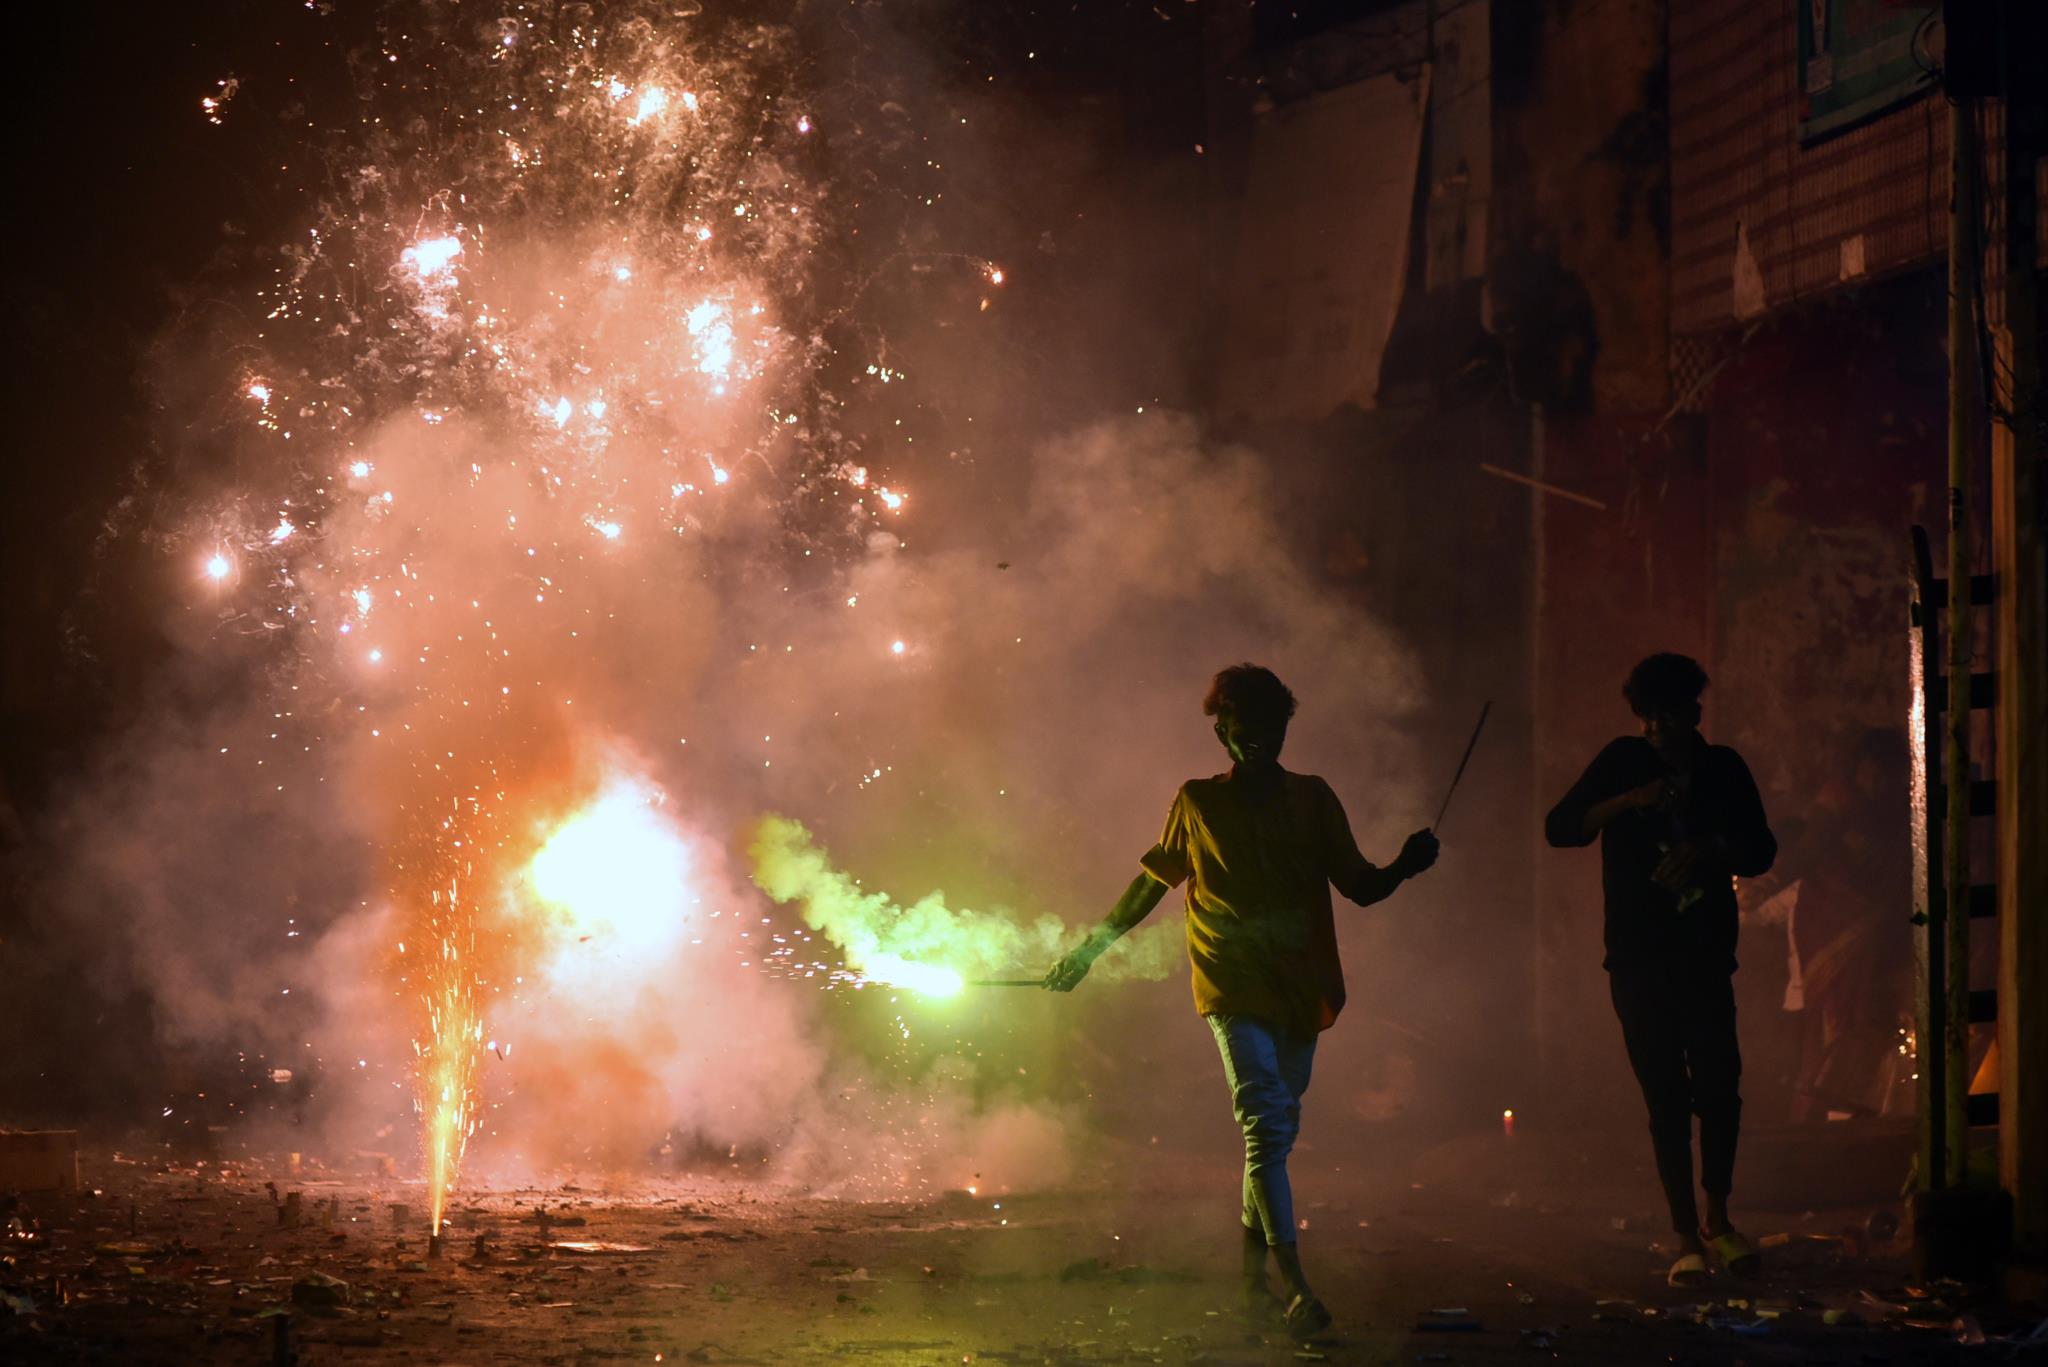 Banco de imagens : fogo, Diwali, agua, fogos de artifício, evento